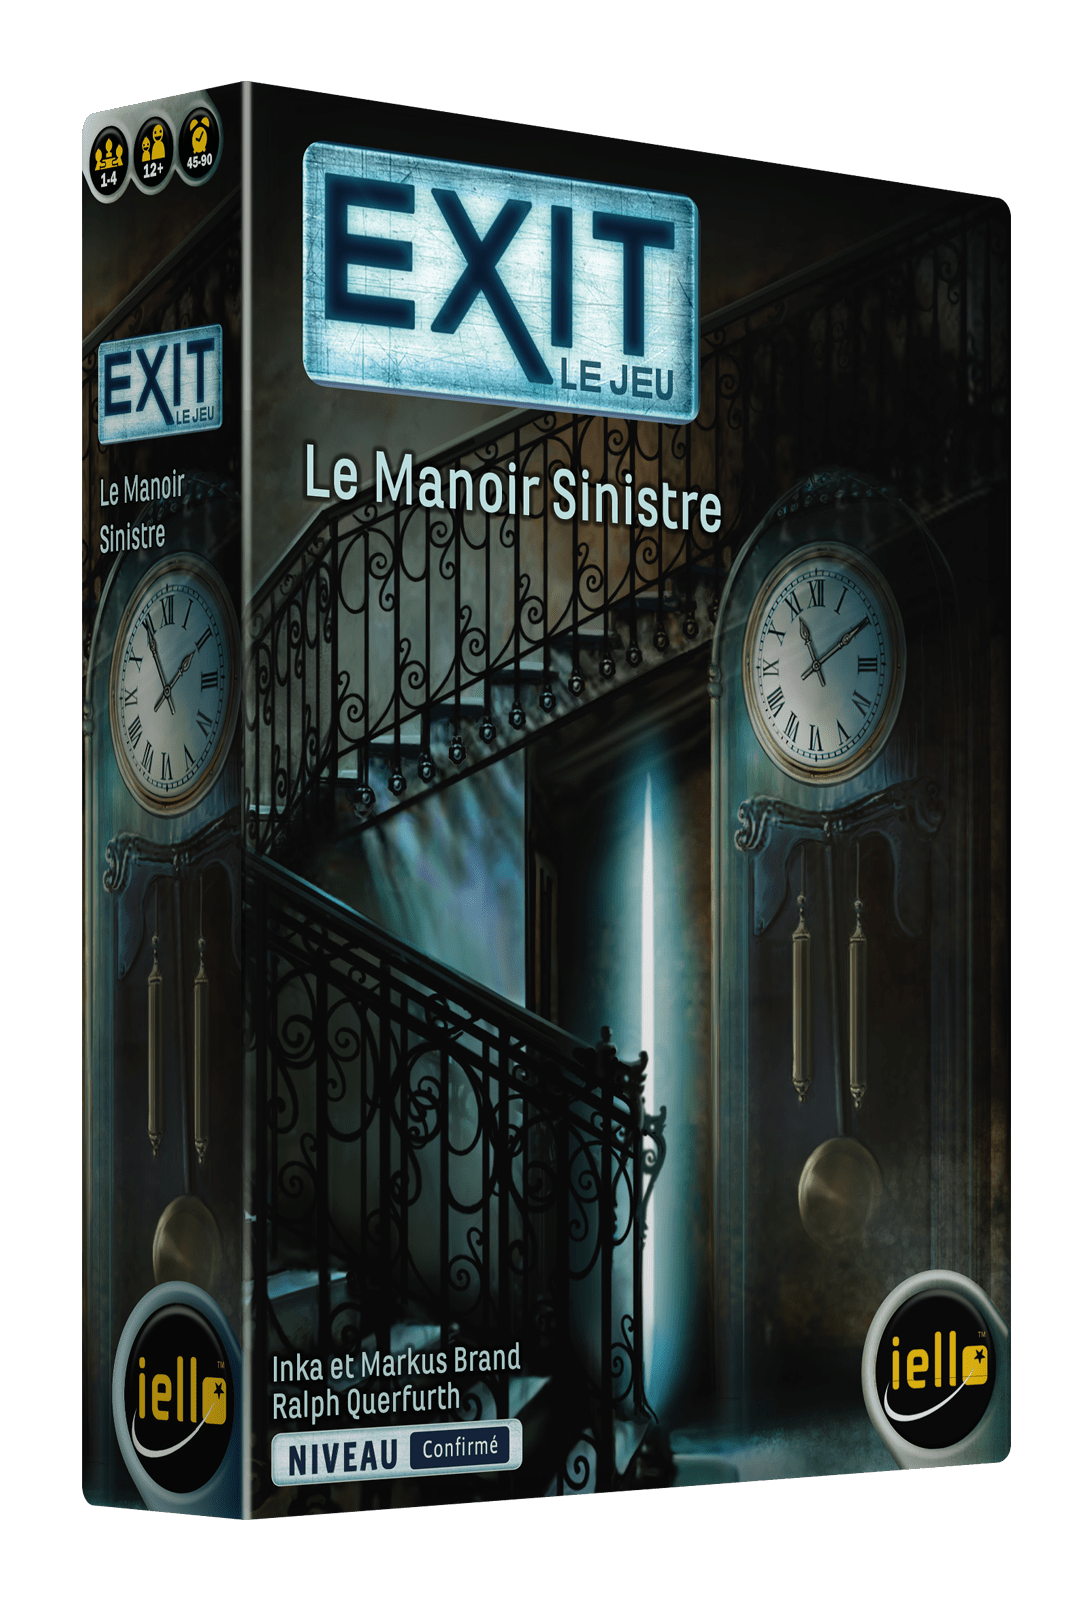 Exit - La disparition de Sherlock Holmes